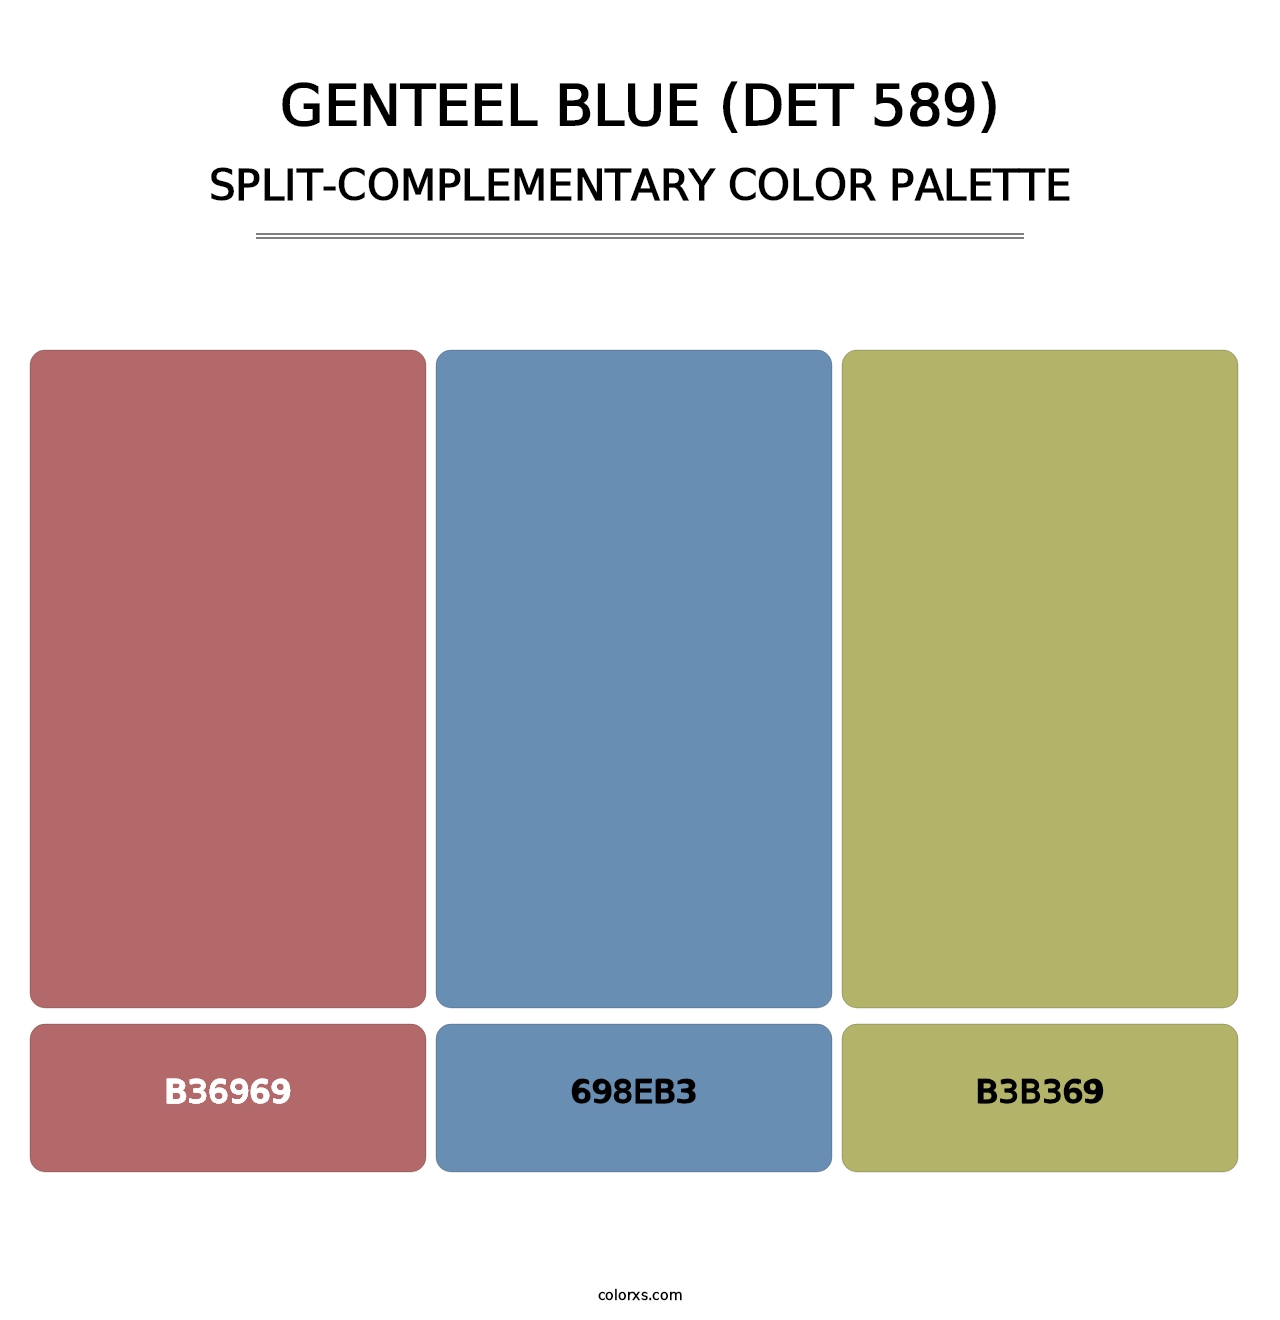 Genteel Blue (DET 589) - Split-Complementary Color Palette